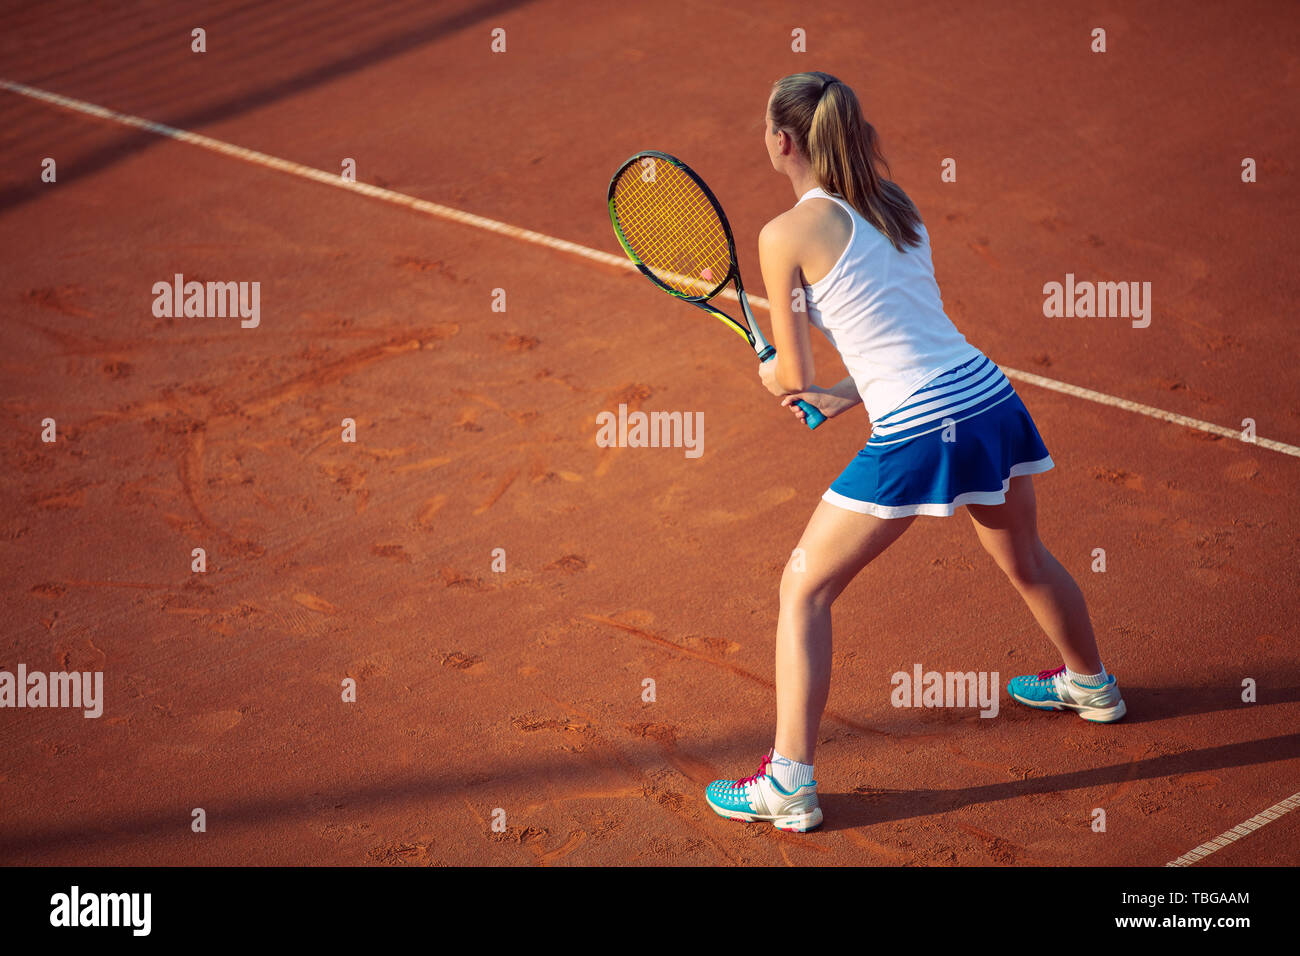 Vue aérienne d'un joueur de tennis féminin sur une cour au cours de match.  Ruler.High angle view Photo Stock - Alamy